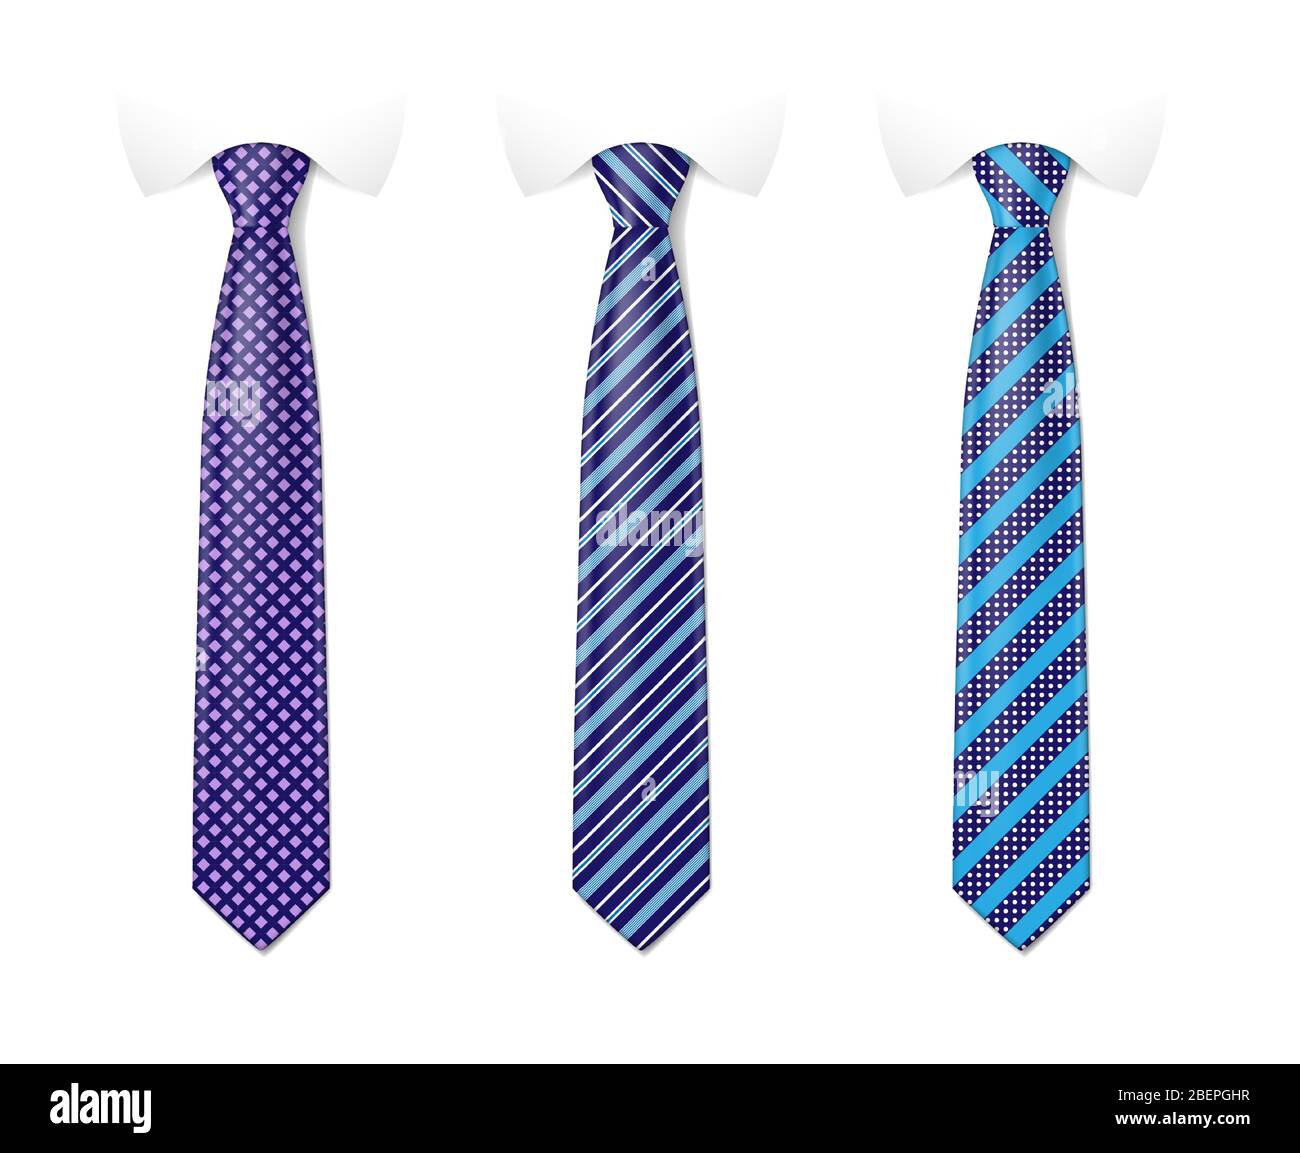 Mann farbigen Krawatte Set. Krawatte Mockup mit verschiedenen Mode-Muster. Gestreifte Seidenkrawatten Vorlagen mit Texturen Set. Vektorgrafik Stock Vektor